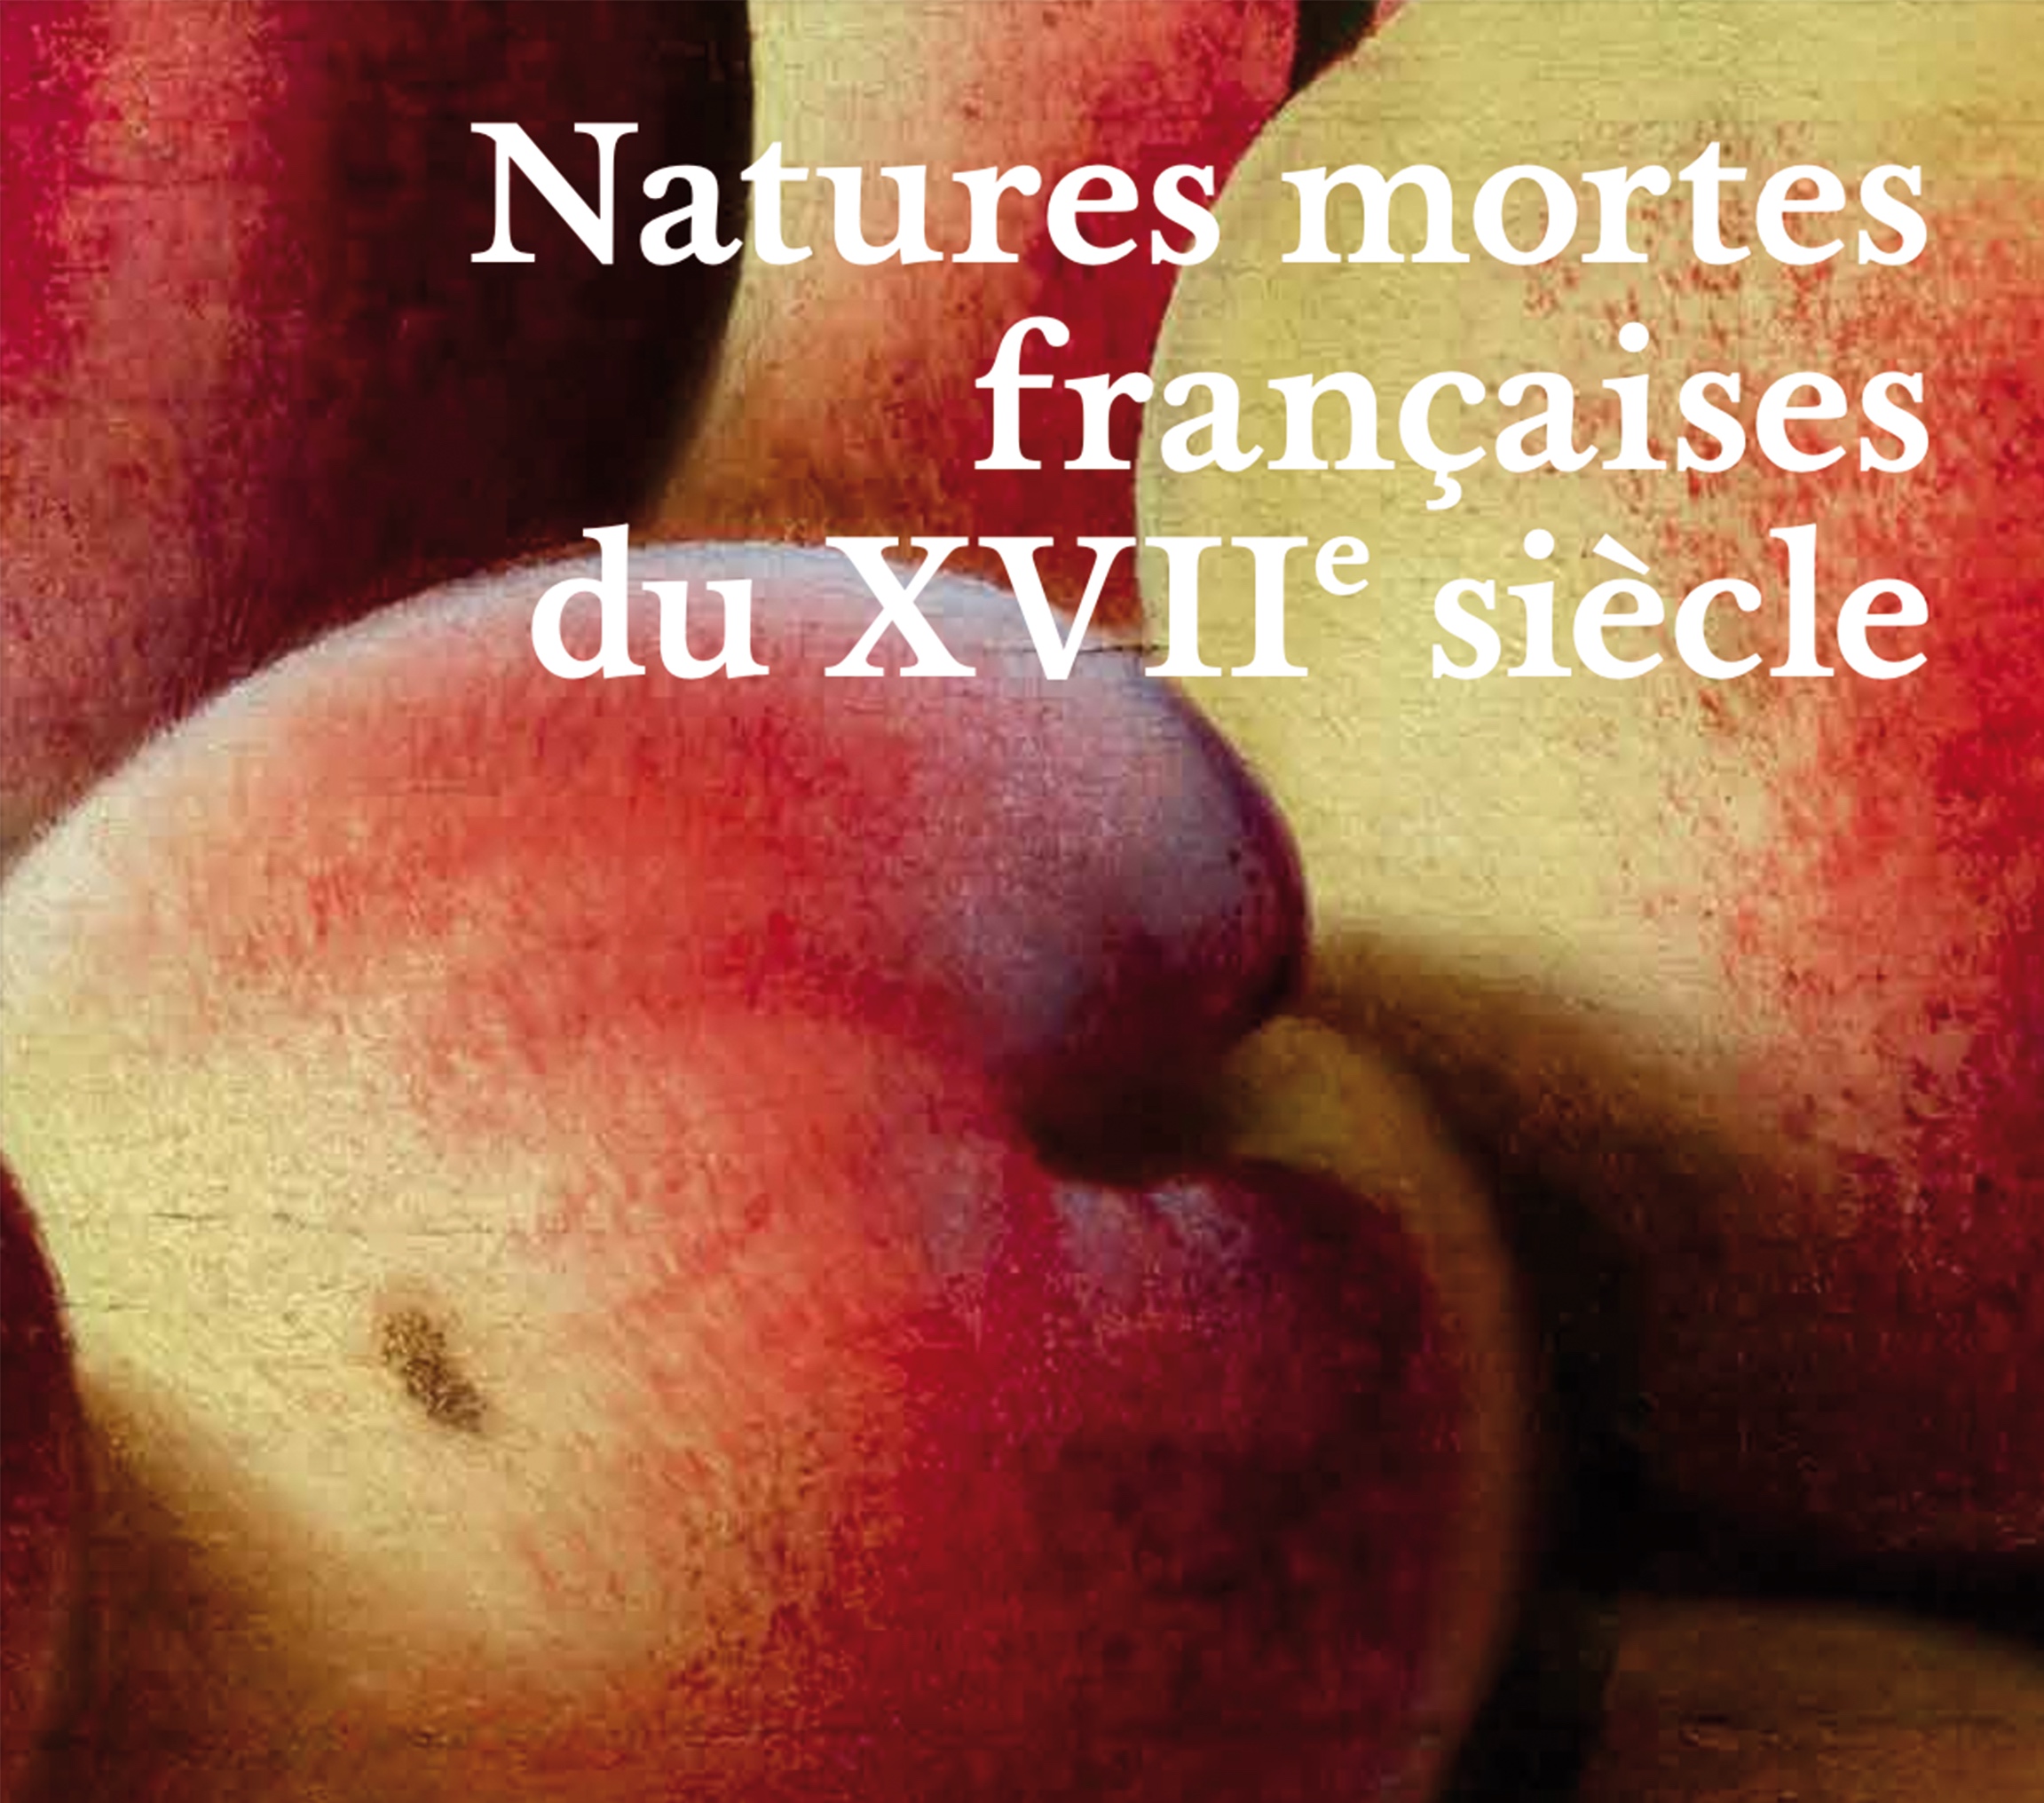 Natures mortes françaises du XVIIe siècle, 2019